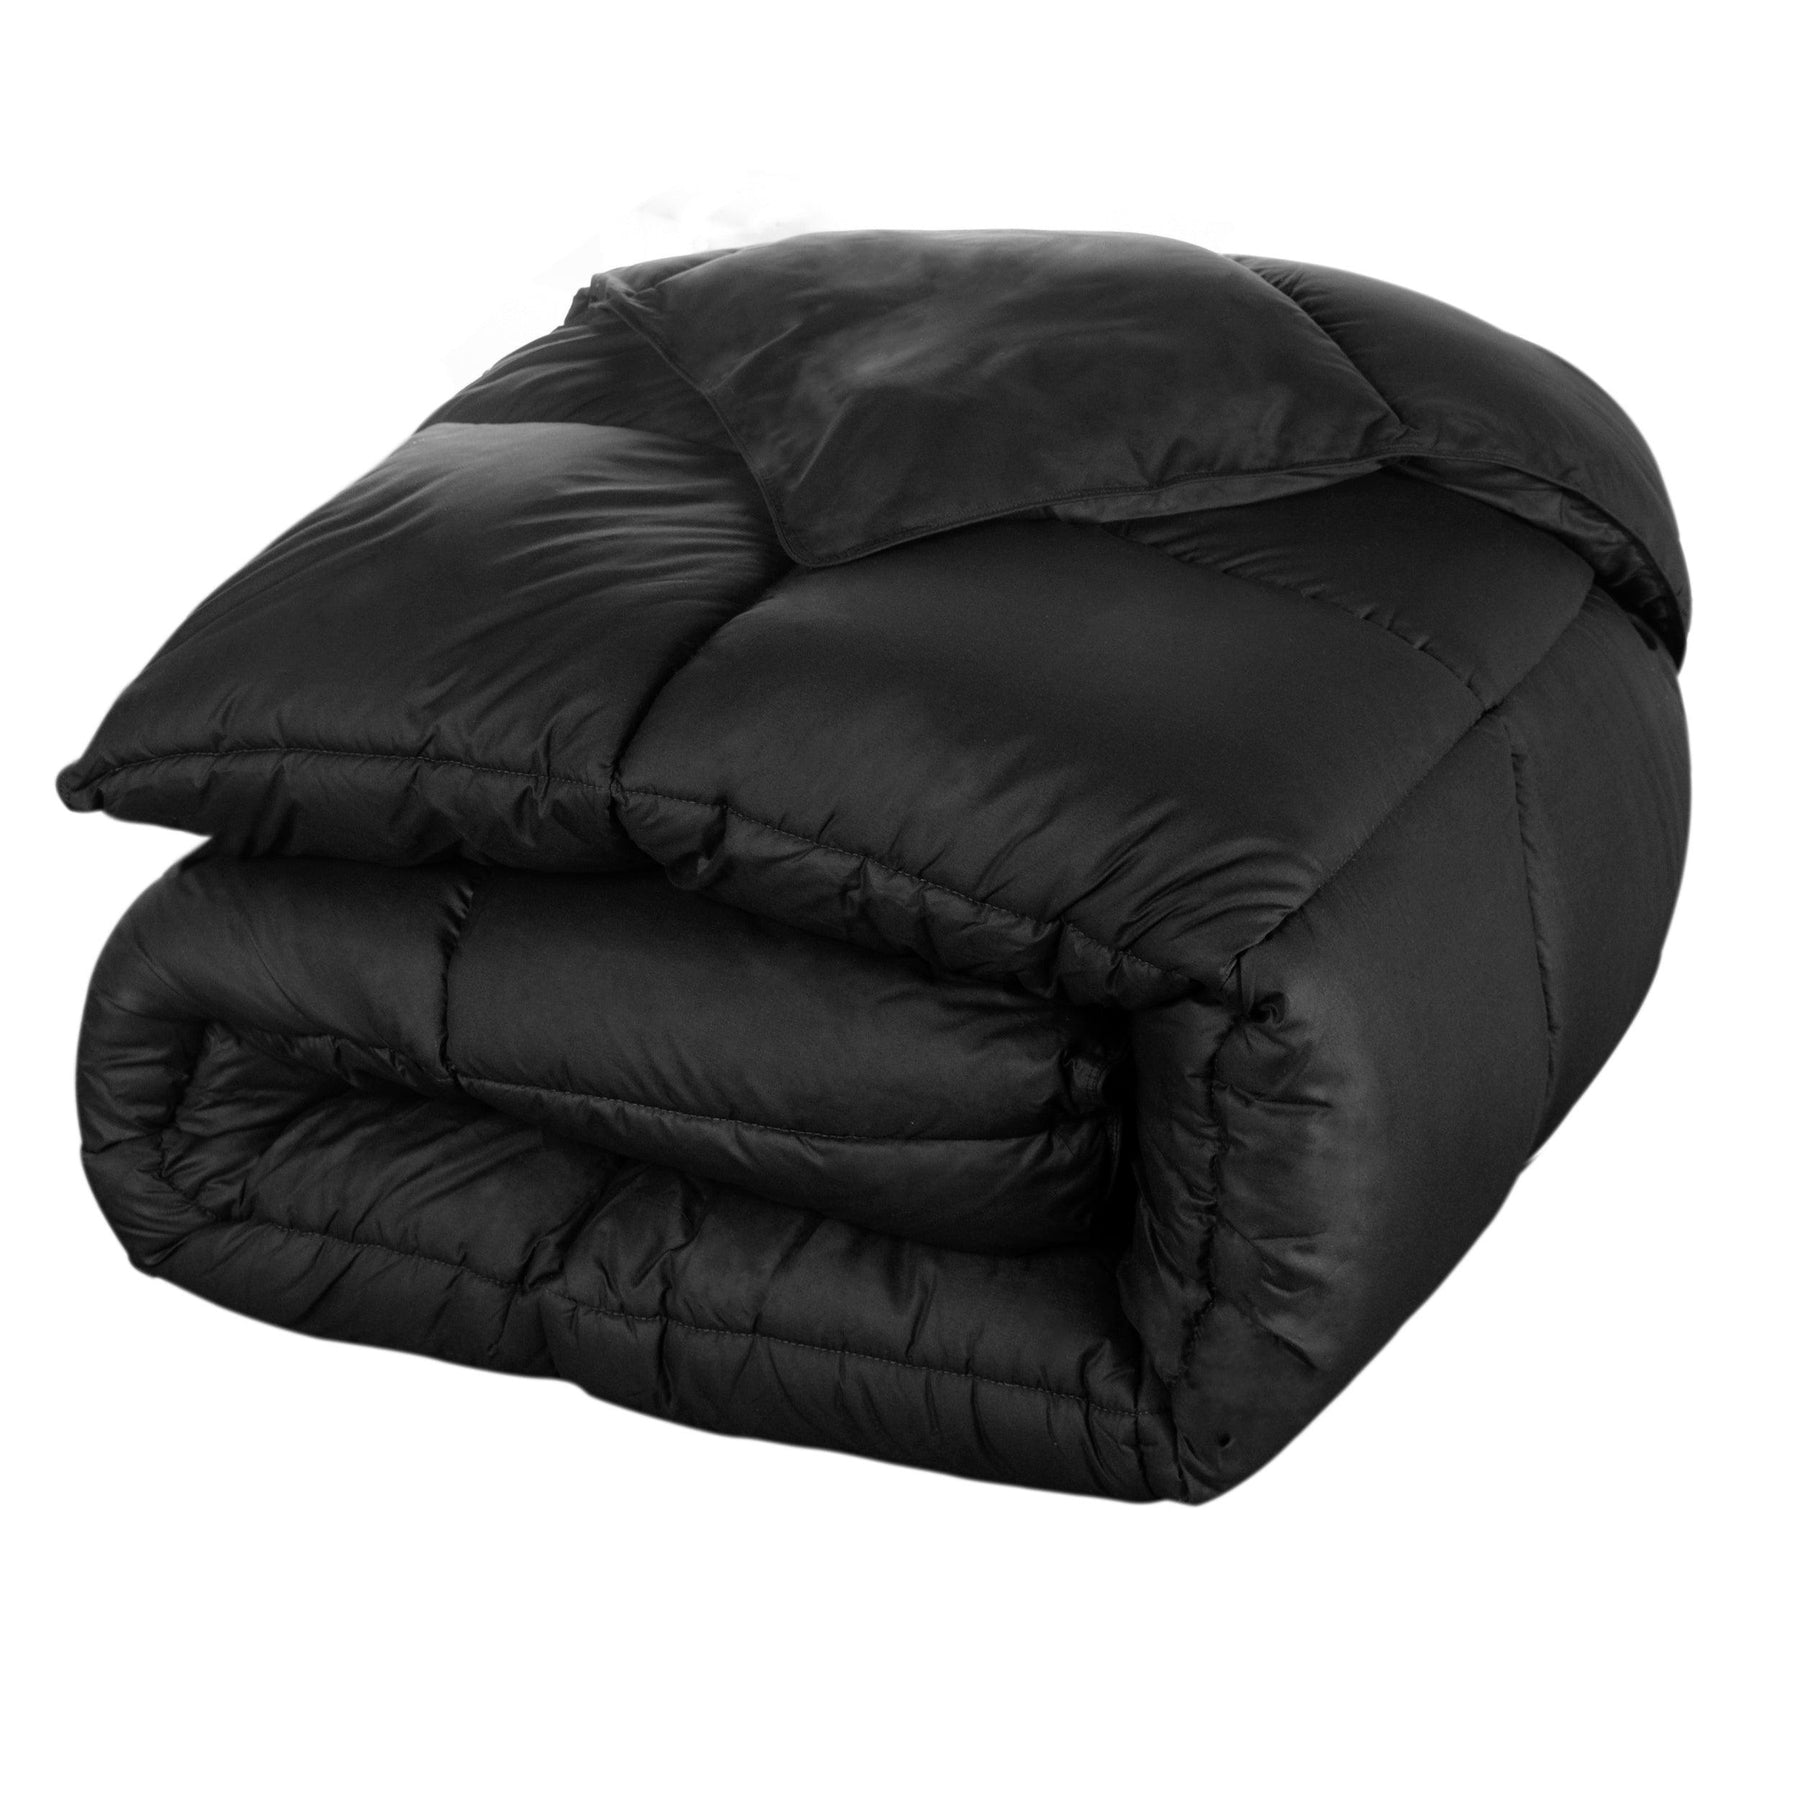  Superior Solid All Season Down Alternative Microfiber Comforter - Black